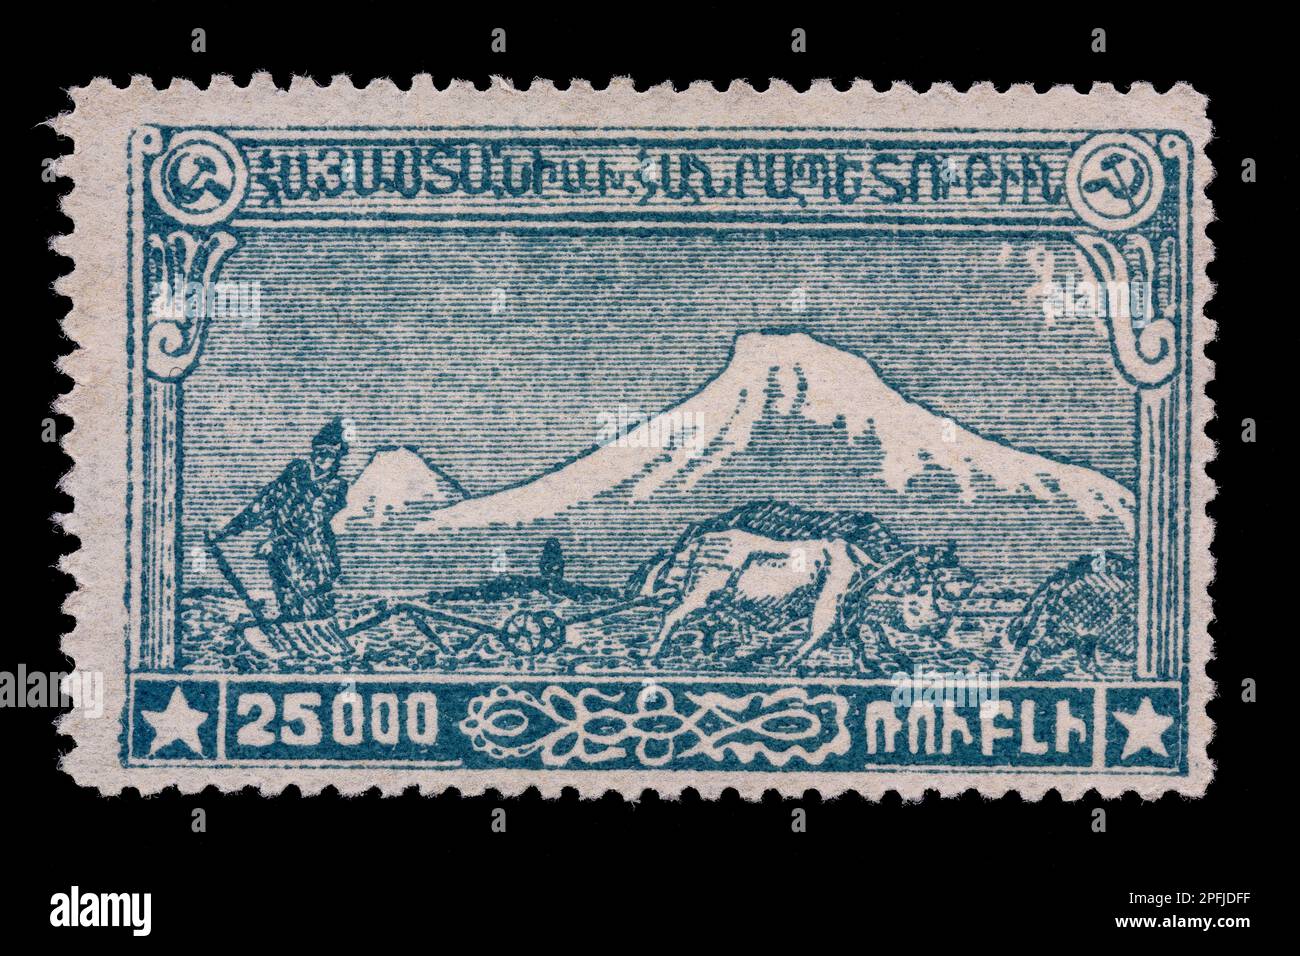 Francobollo iniziale dall'Armenia. Creato ma mai pubblicato nel 1921. Mostra la scena agricola con montagne innevate. Valore nominale 25000 rubli. Foto Stock